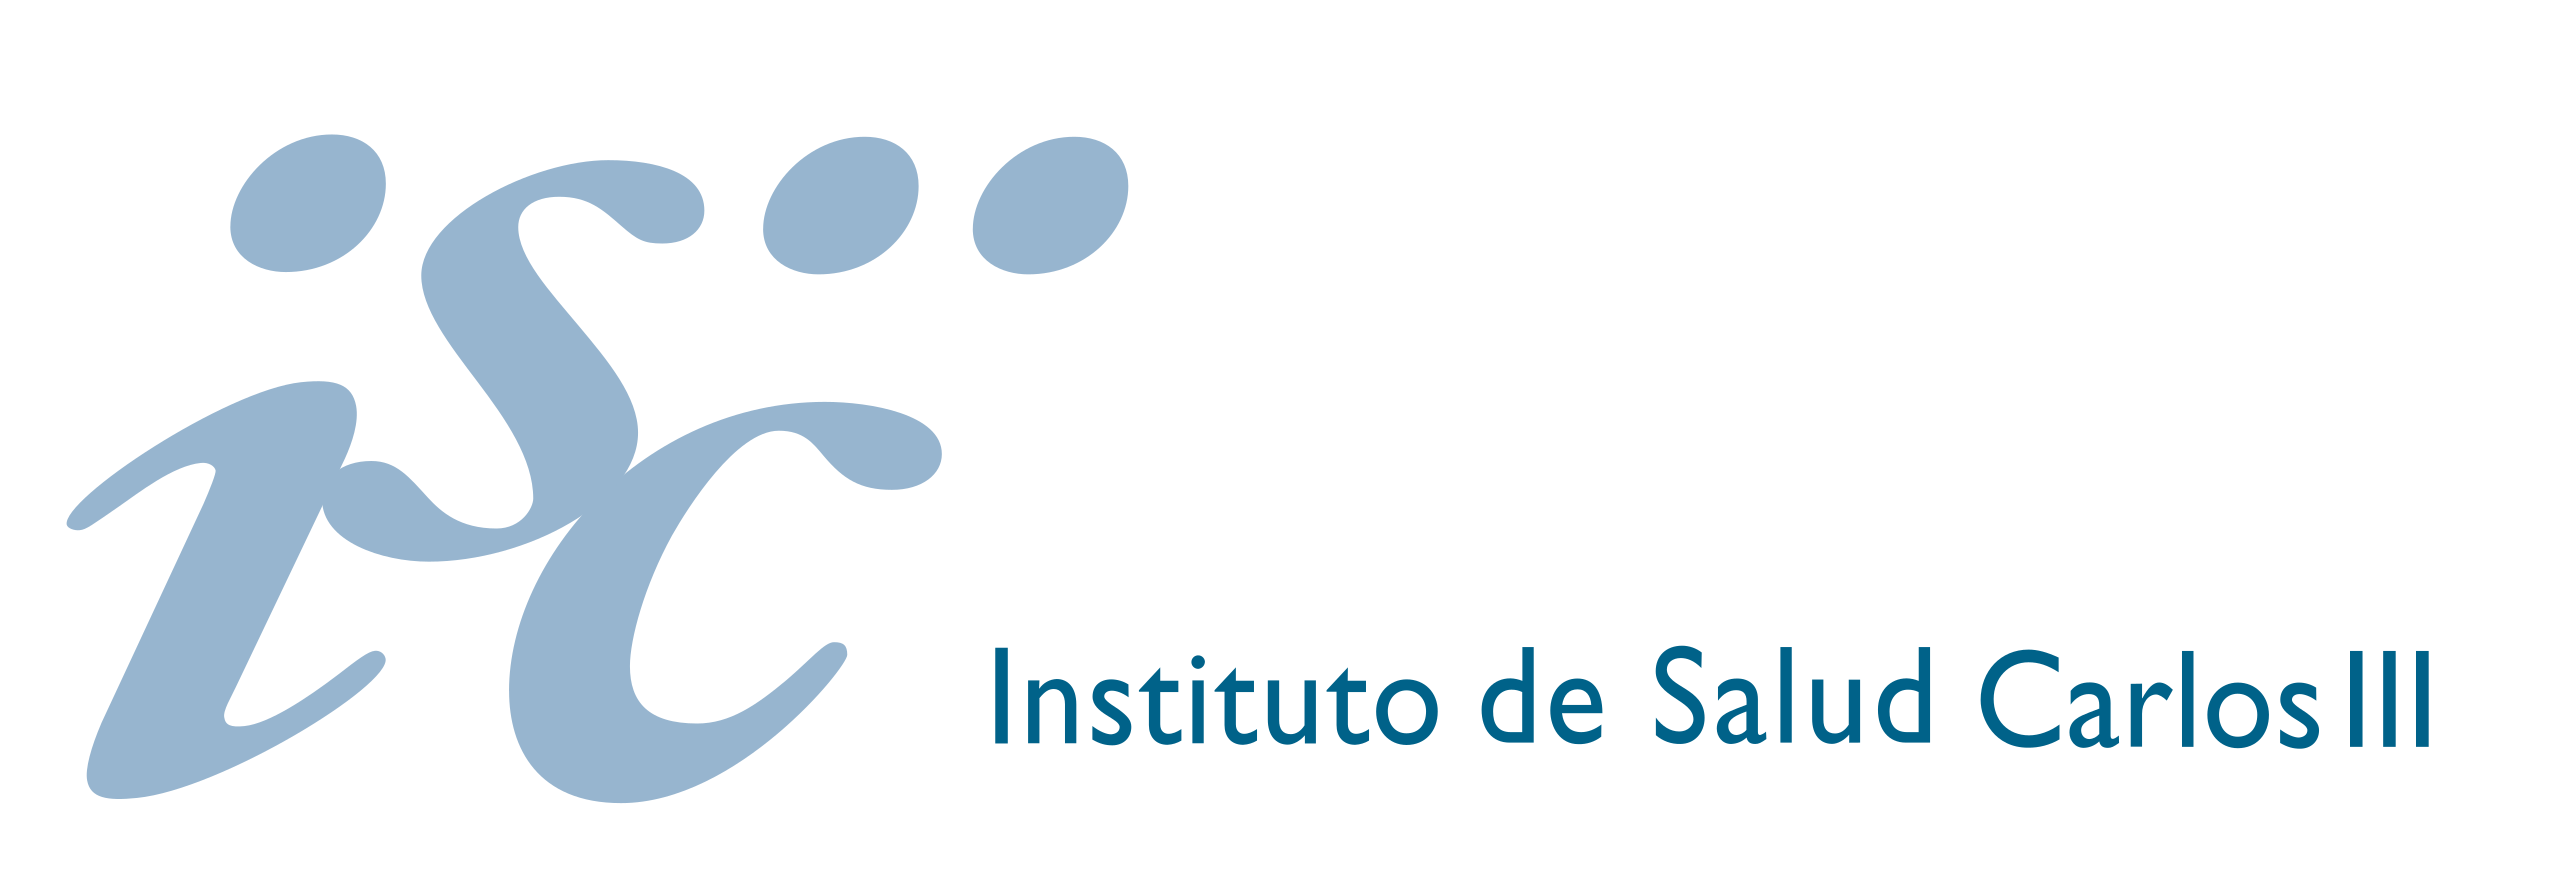 Logotipo del Instituto de Salud Carlos III ISCIII